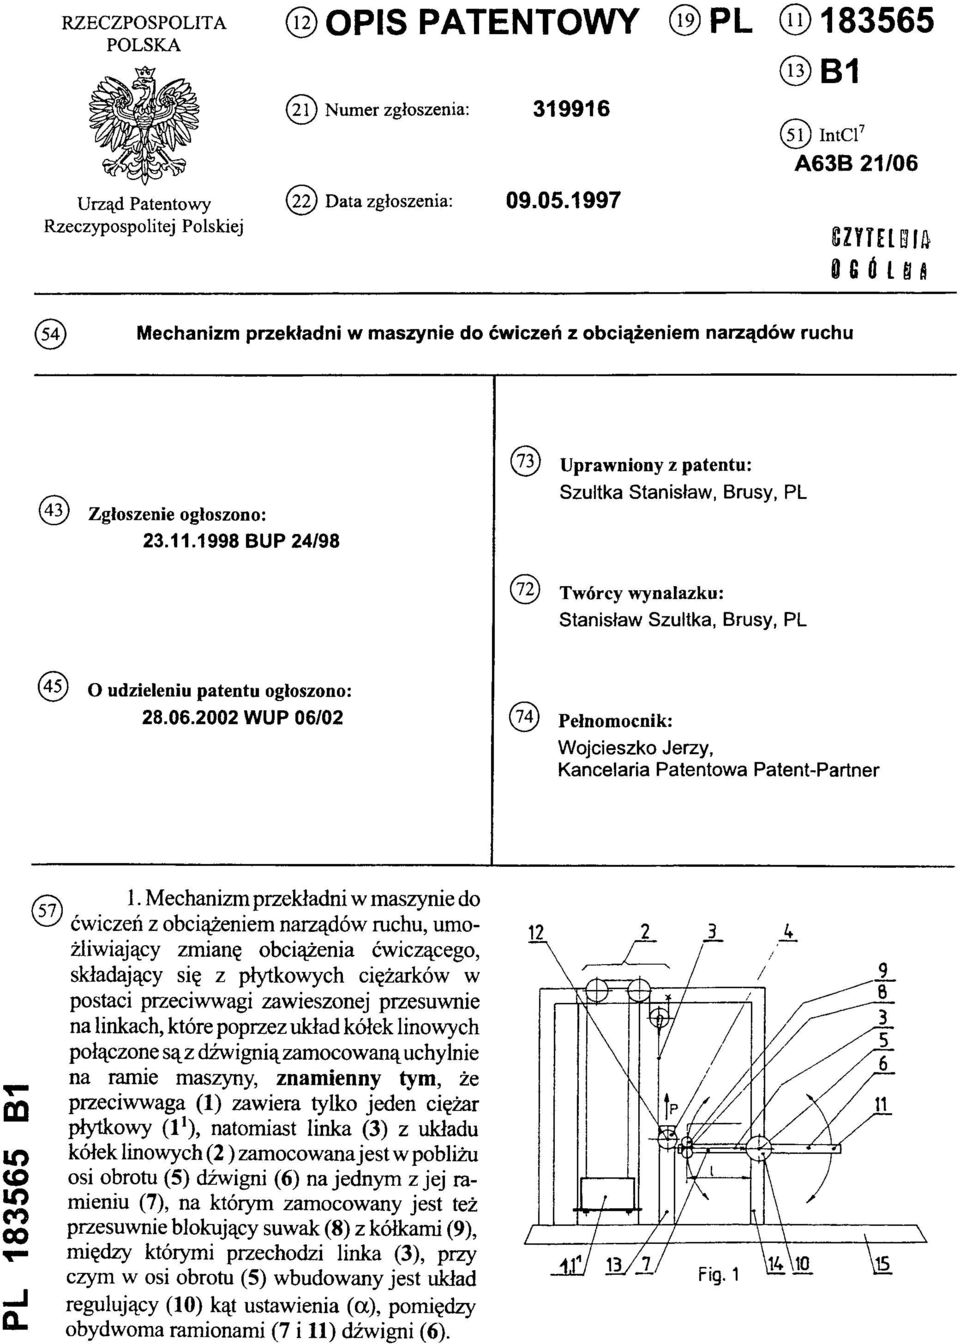 1998 BUP 24/98 (73) Uprawniony z patentu: Szultka Stanisław, Brusy, PL (72) Twórcy wynalazku: Stanisław Szultka, Brusy, PL (45) O udzieleniu patentu ogłoszono: 28.06.